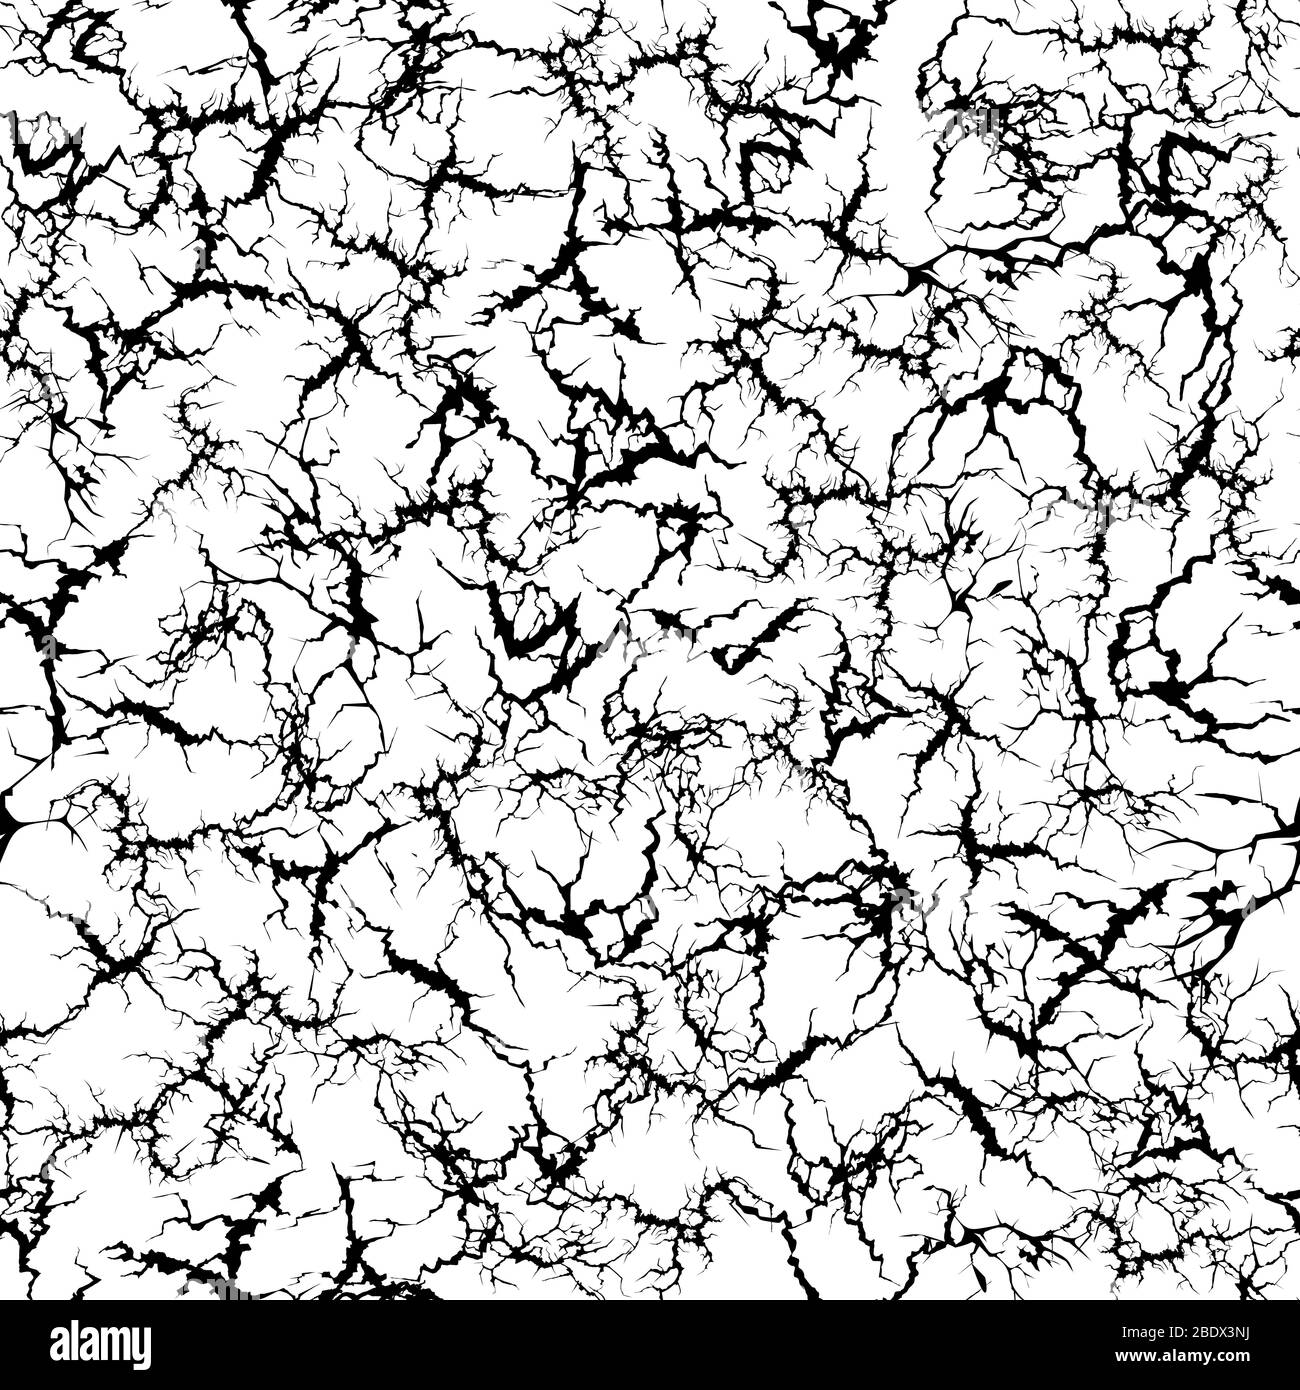 Craquelure-Muster. Grunge Risse, geknackt lackierte Wand und Boden Risse Textur nahtlose Vektor-Illustration Stock Vektor